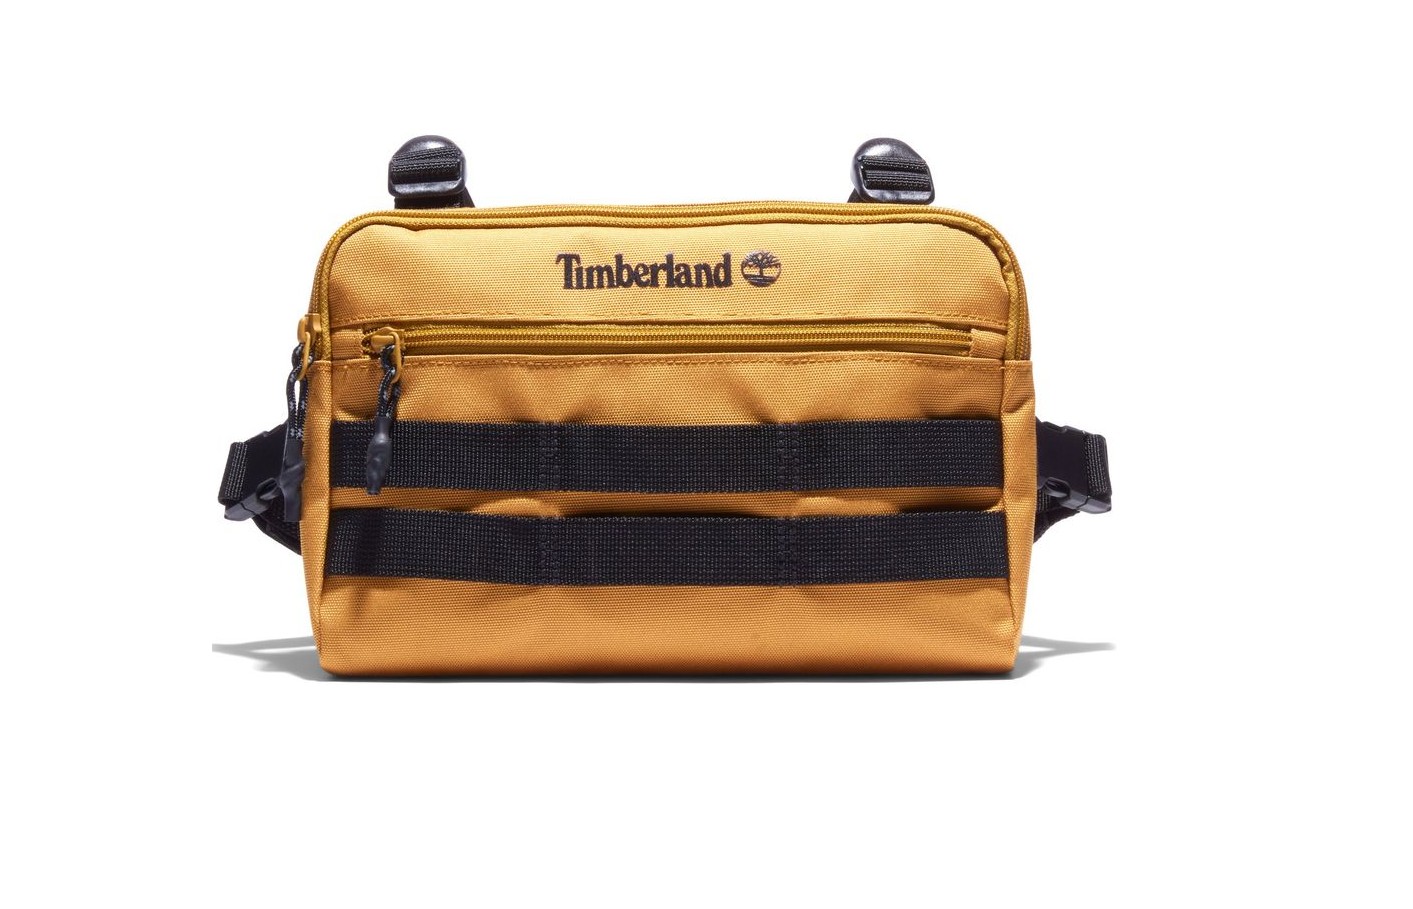 Timberland quay trở lại với chiếc túi đeo ngực mới giống kiểu nhiều dân Hip Hop Việt hay đeo